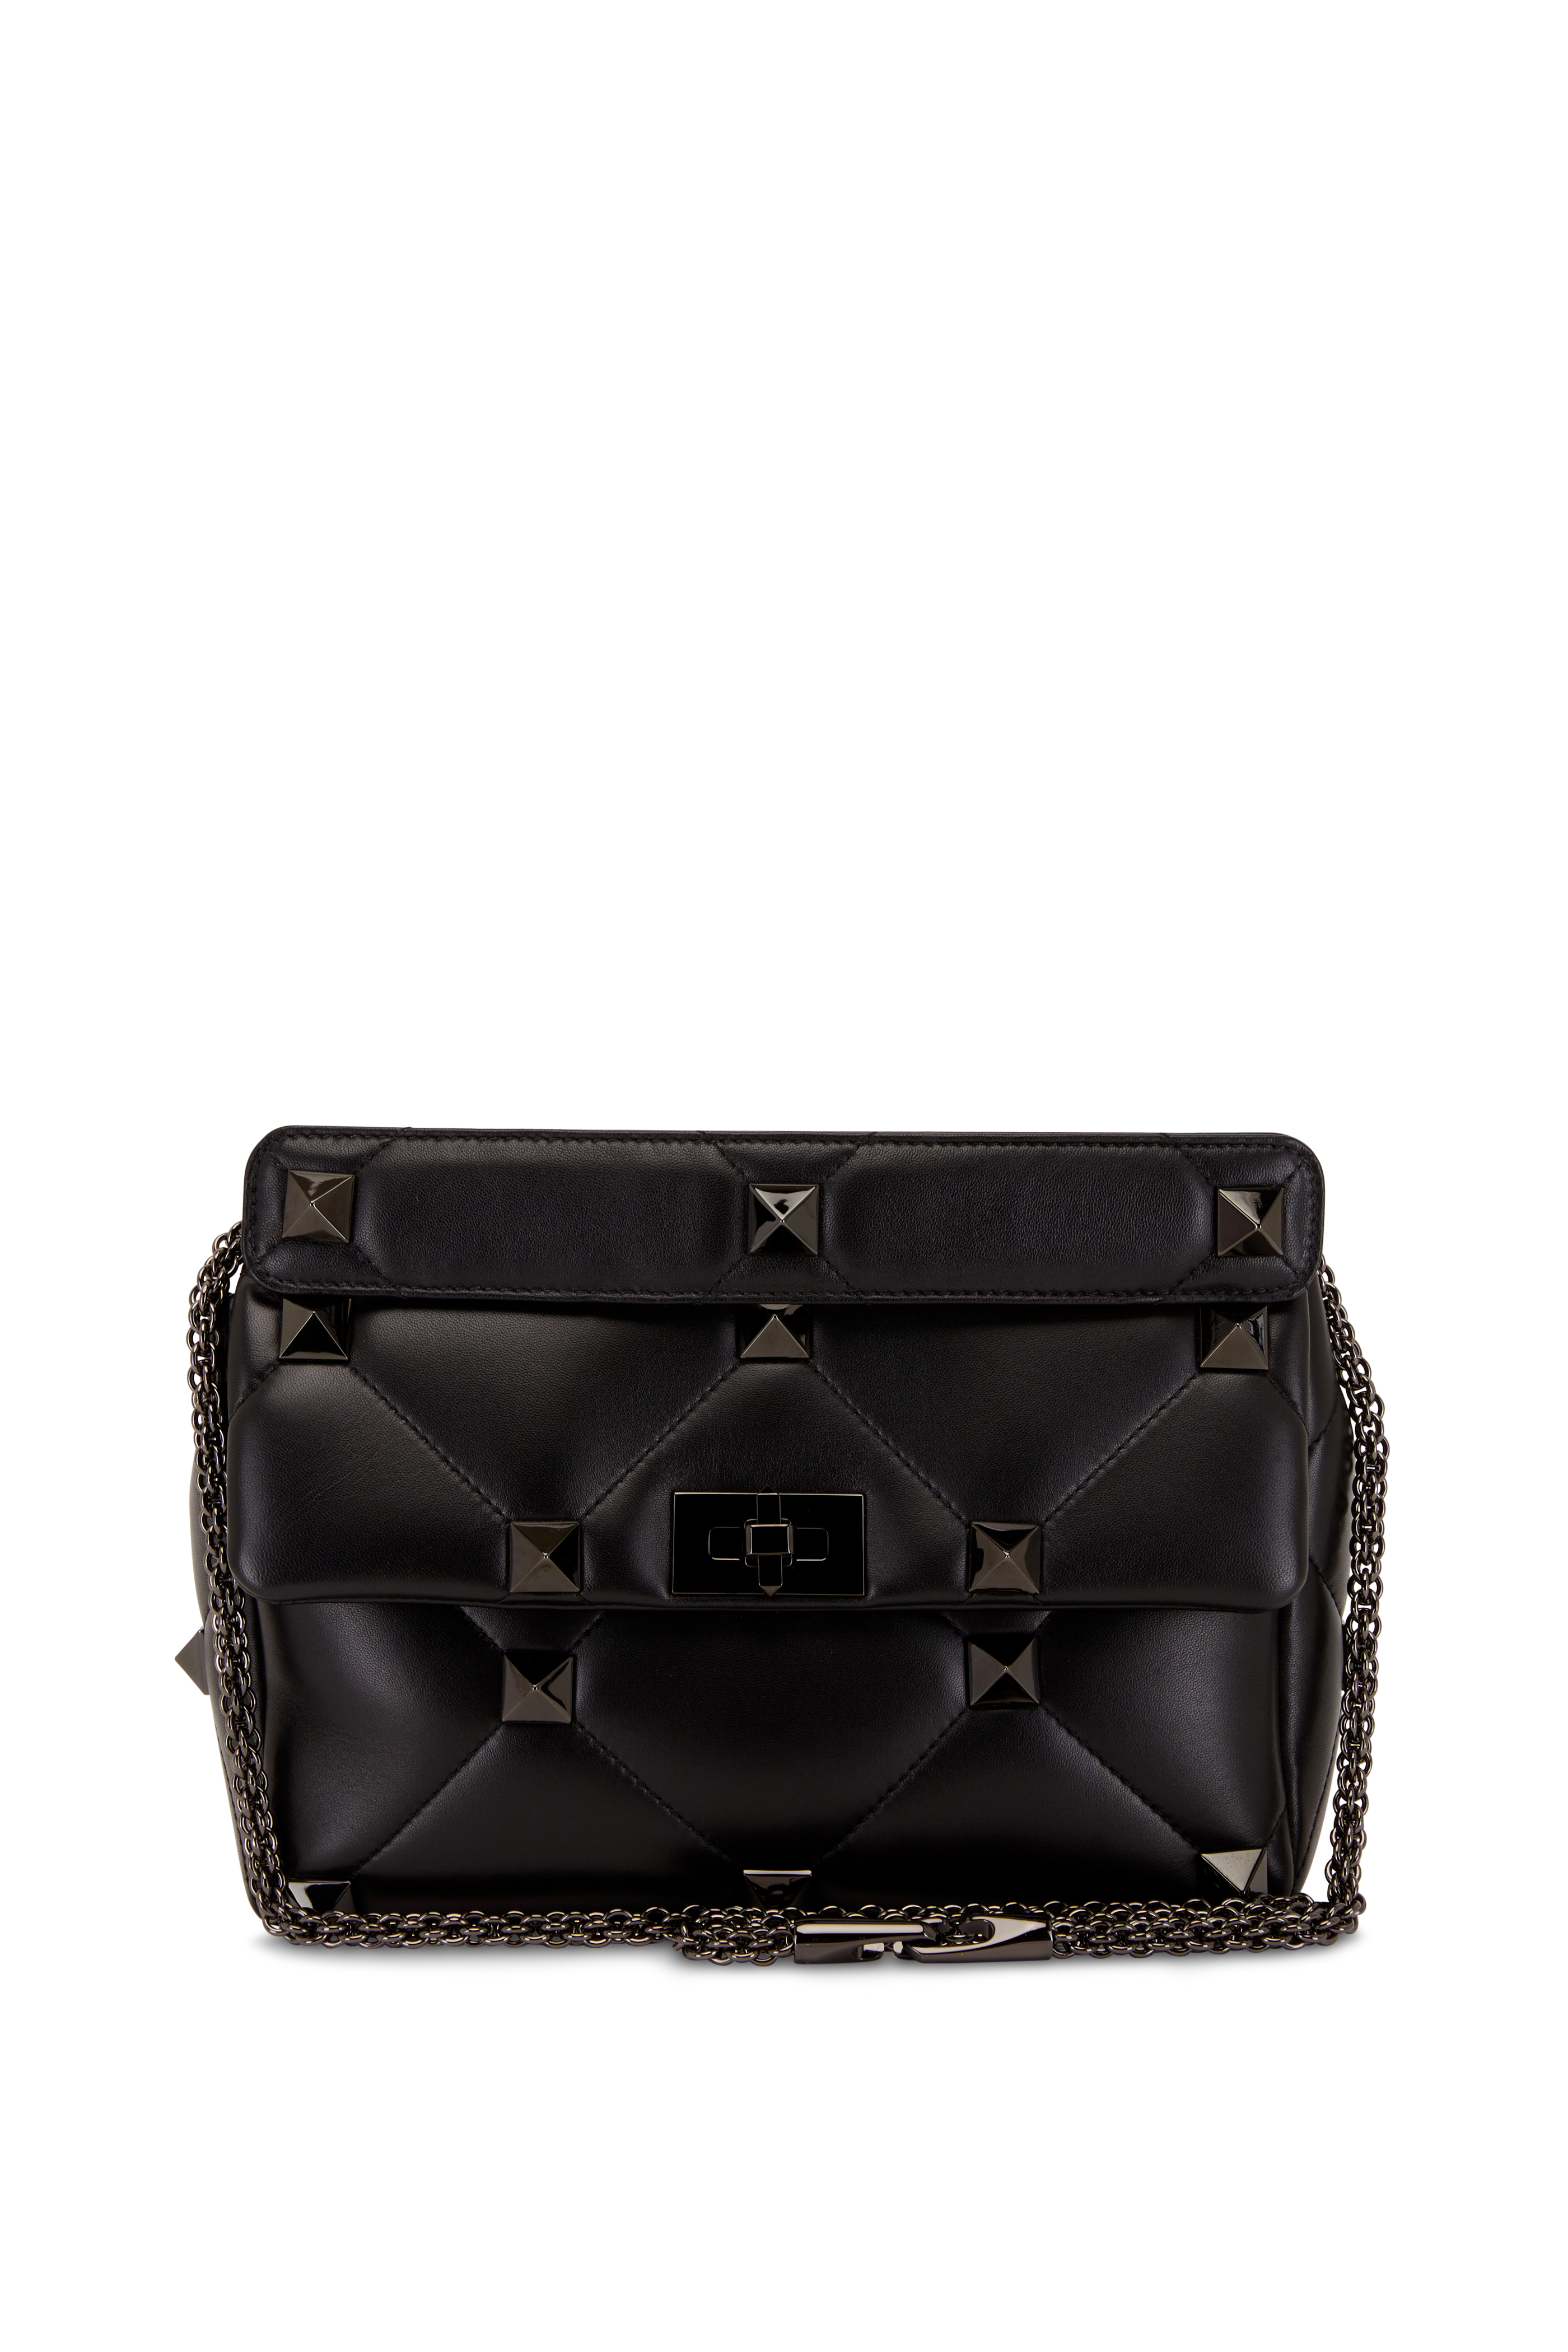 Valentino Garavani, Roman Stud Small Leather Shoulder Bag, Women, Black, Embellished, Unisize, Shoulder Bags